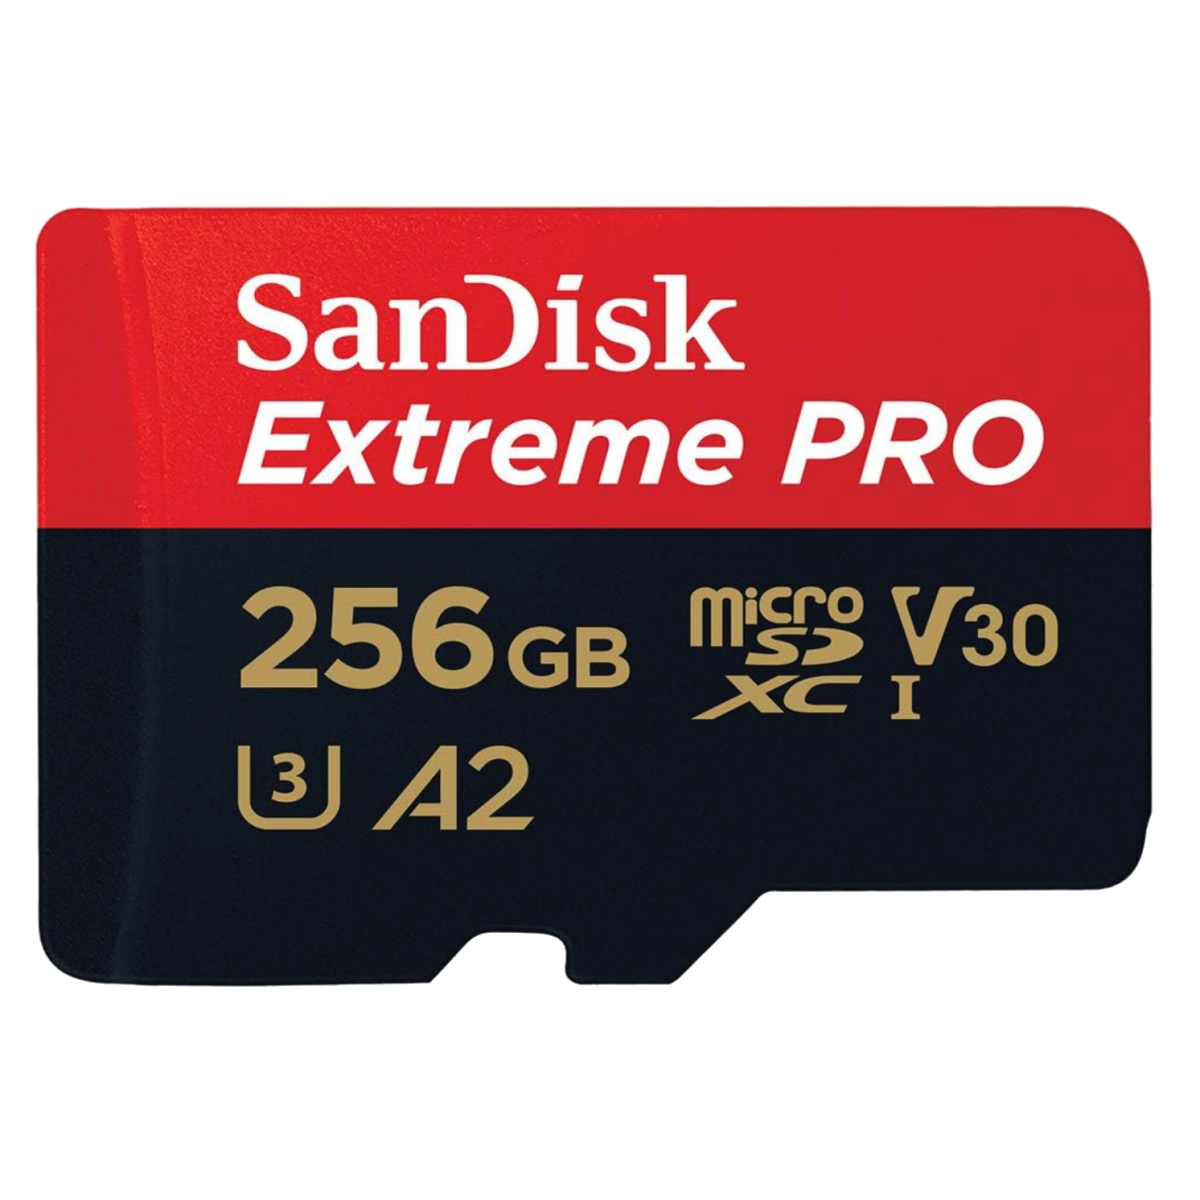 A SanDisk Extreme Pro UHS-I microSDXC card